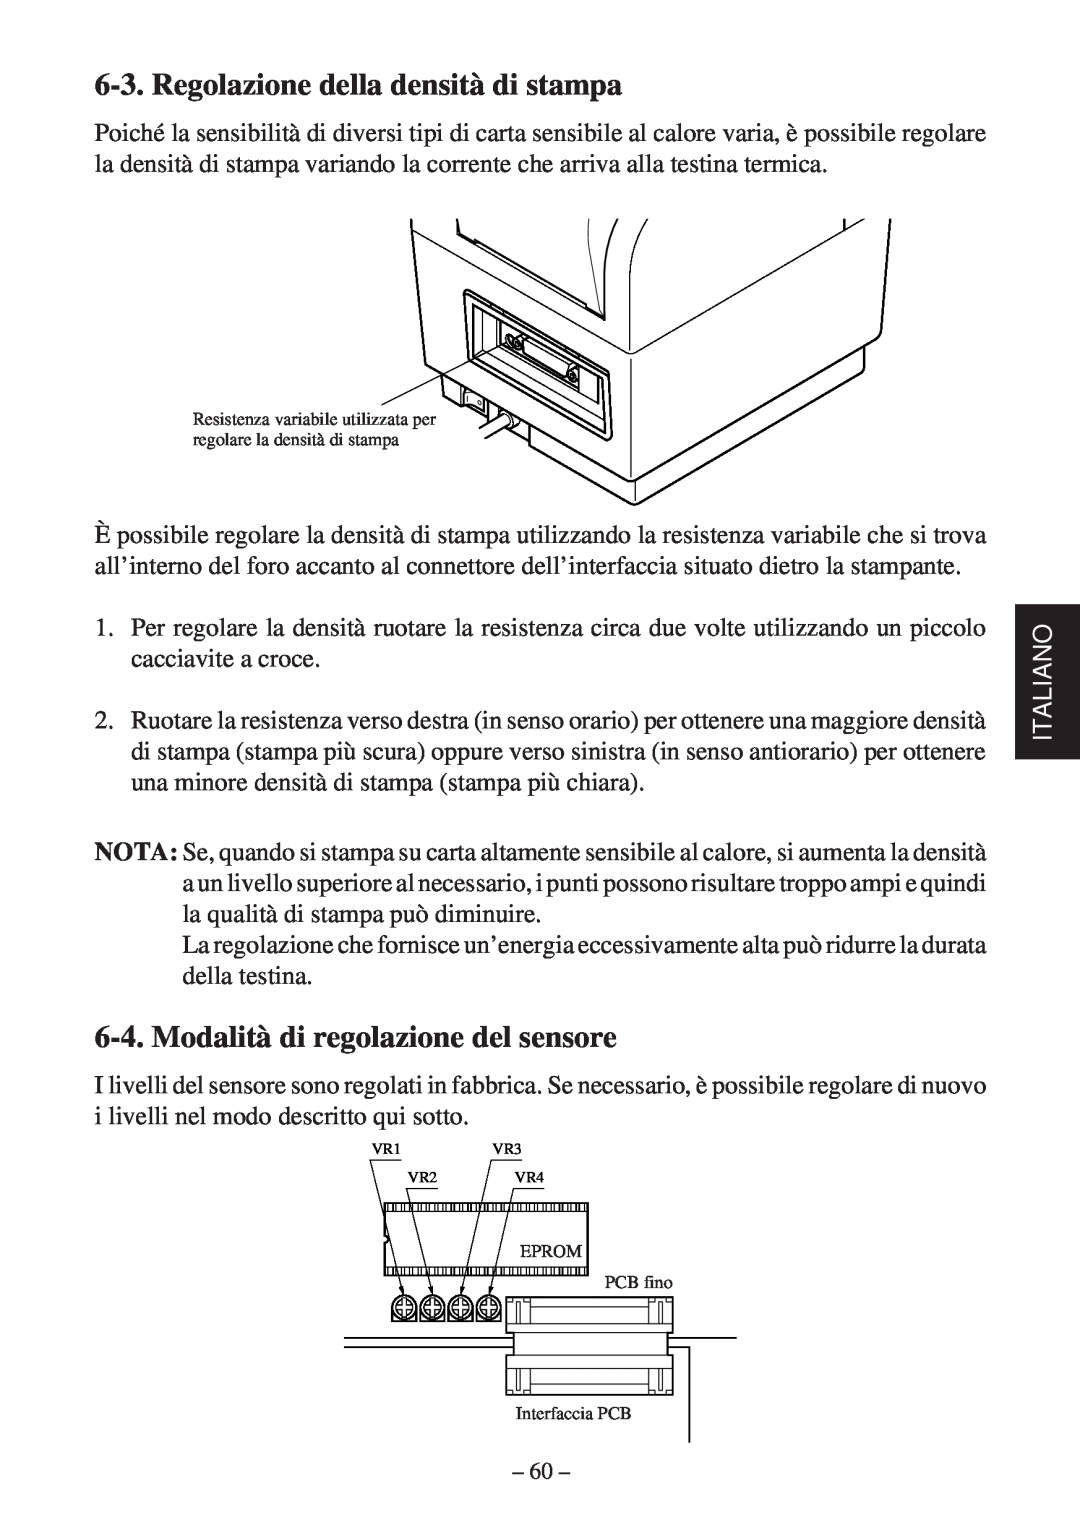 Star Micronics TSP400Z Series Regolazione della densità di stampa, Modalità di regolazione del sensore, Italiano 